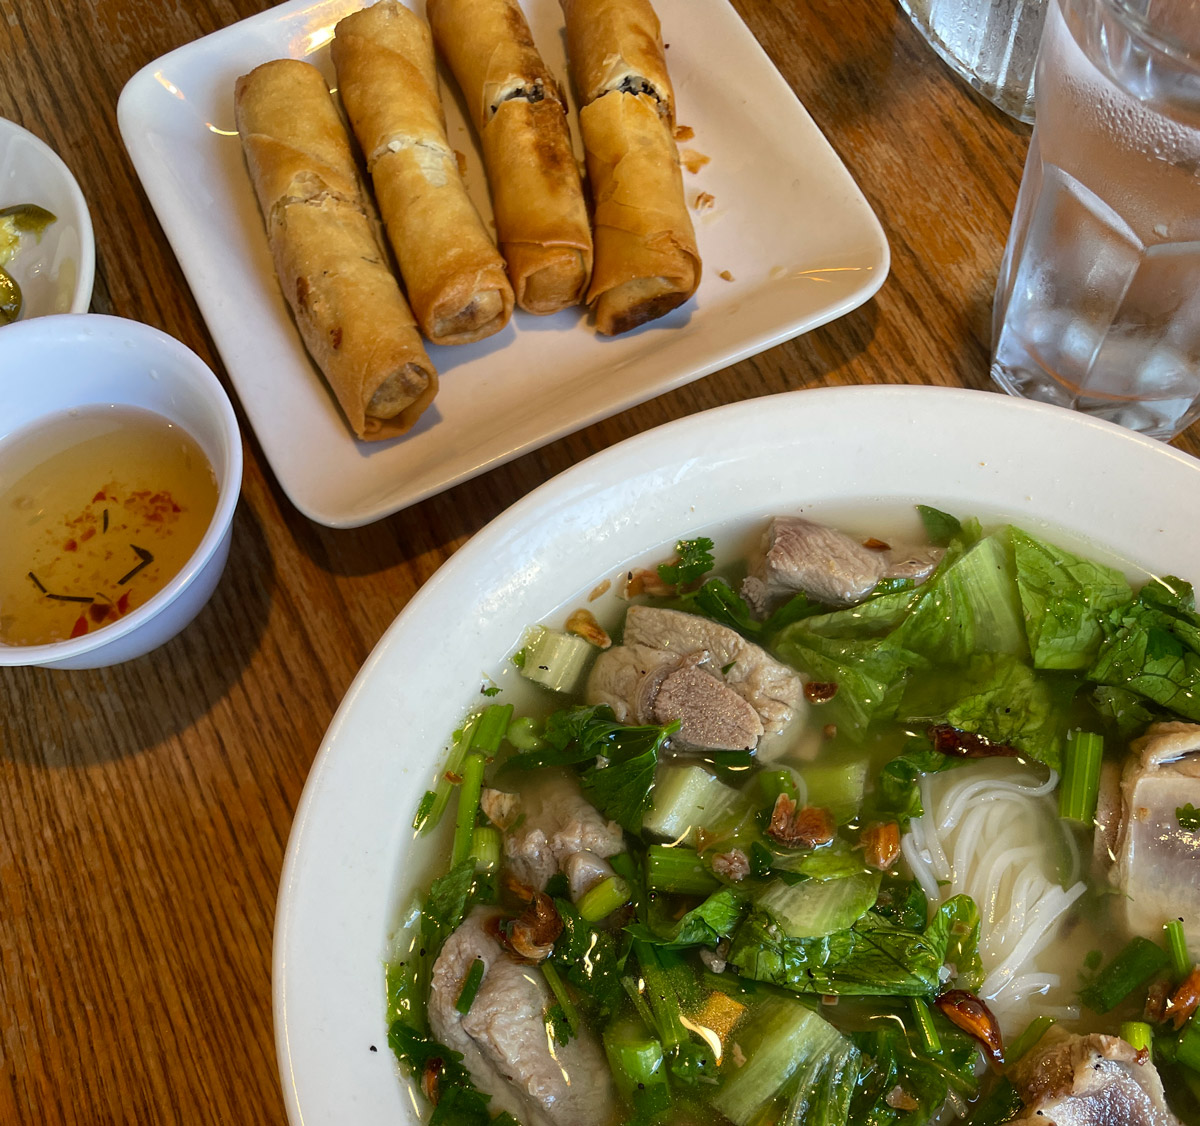 Phnom Penh soup and spring rolls at Mekha